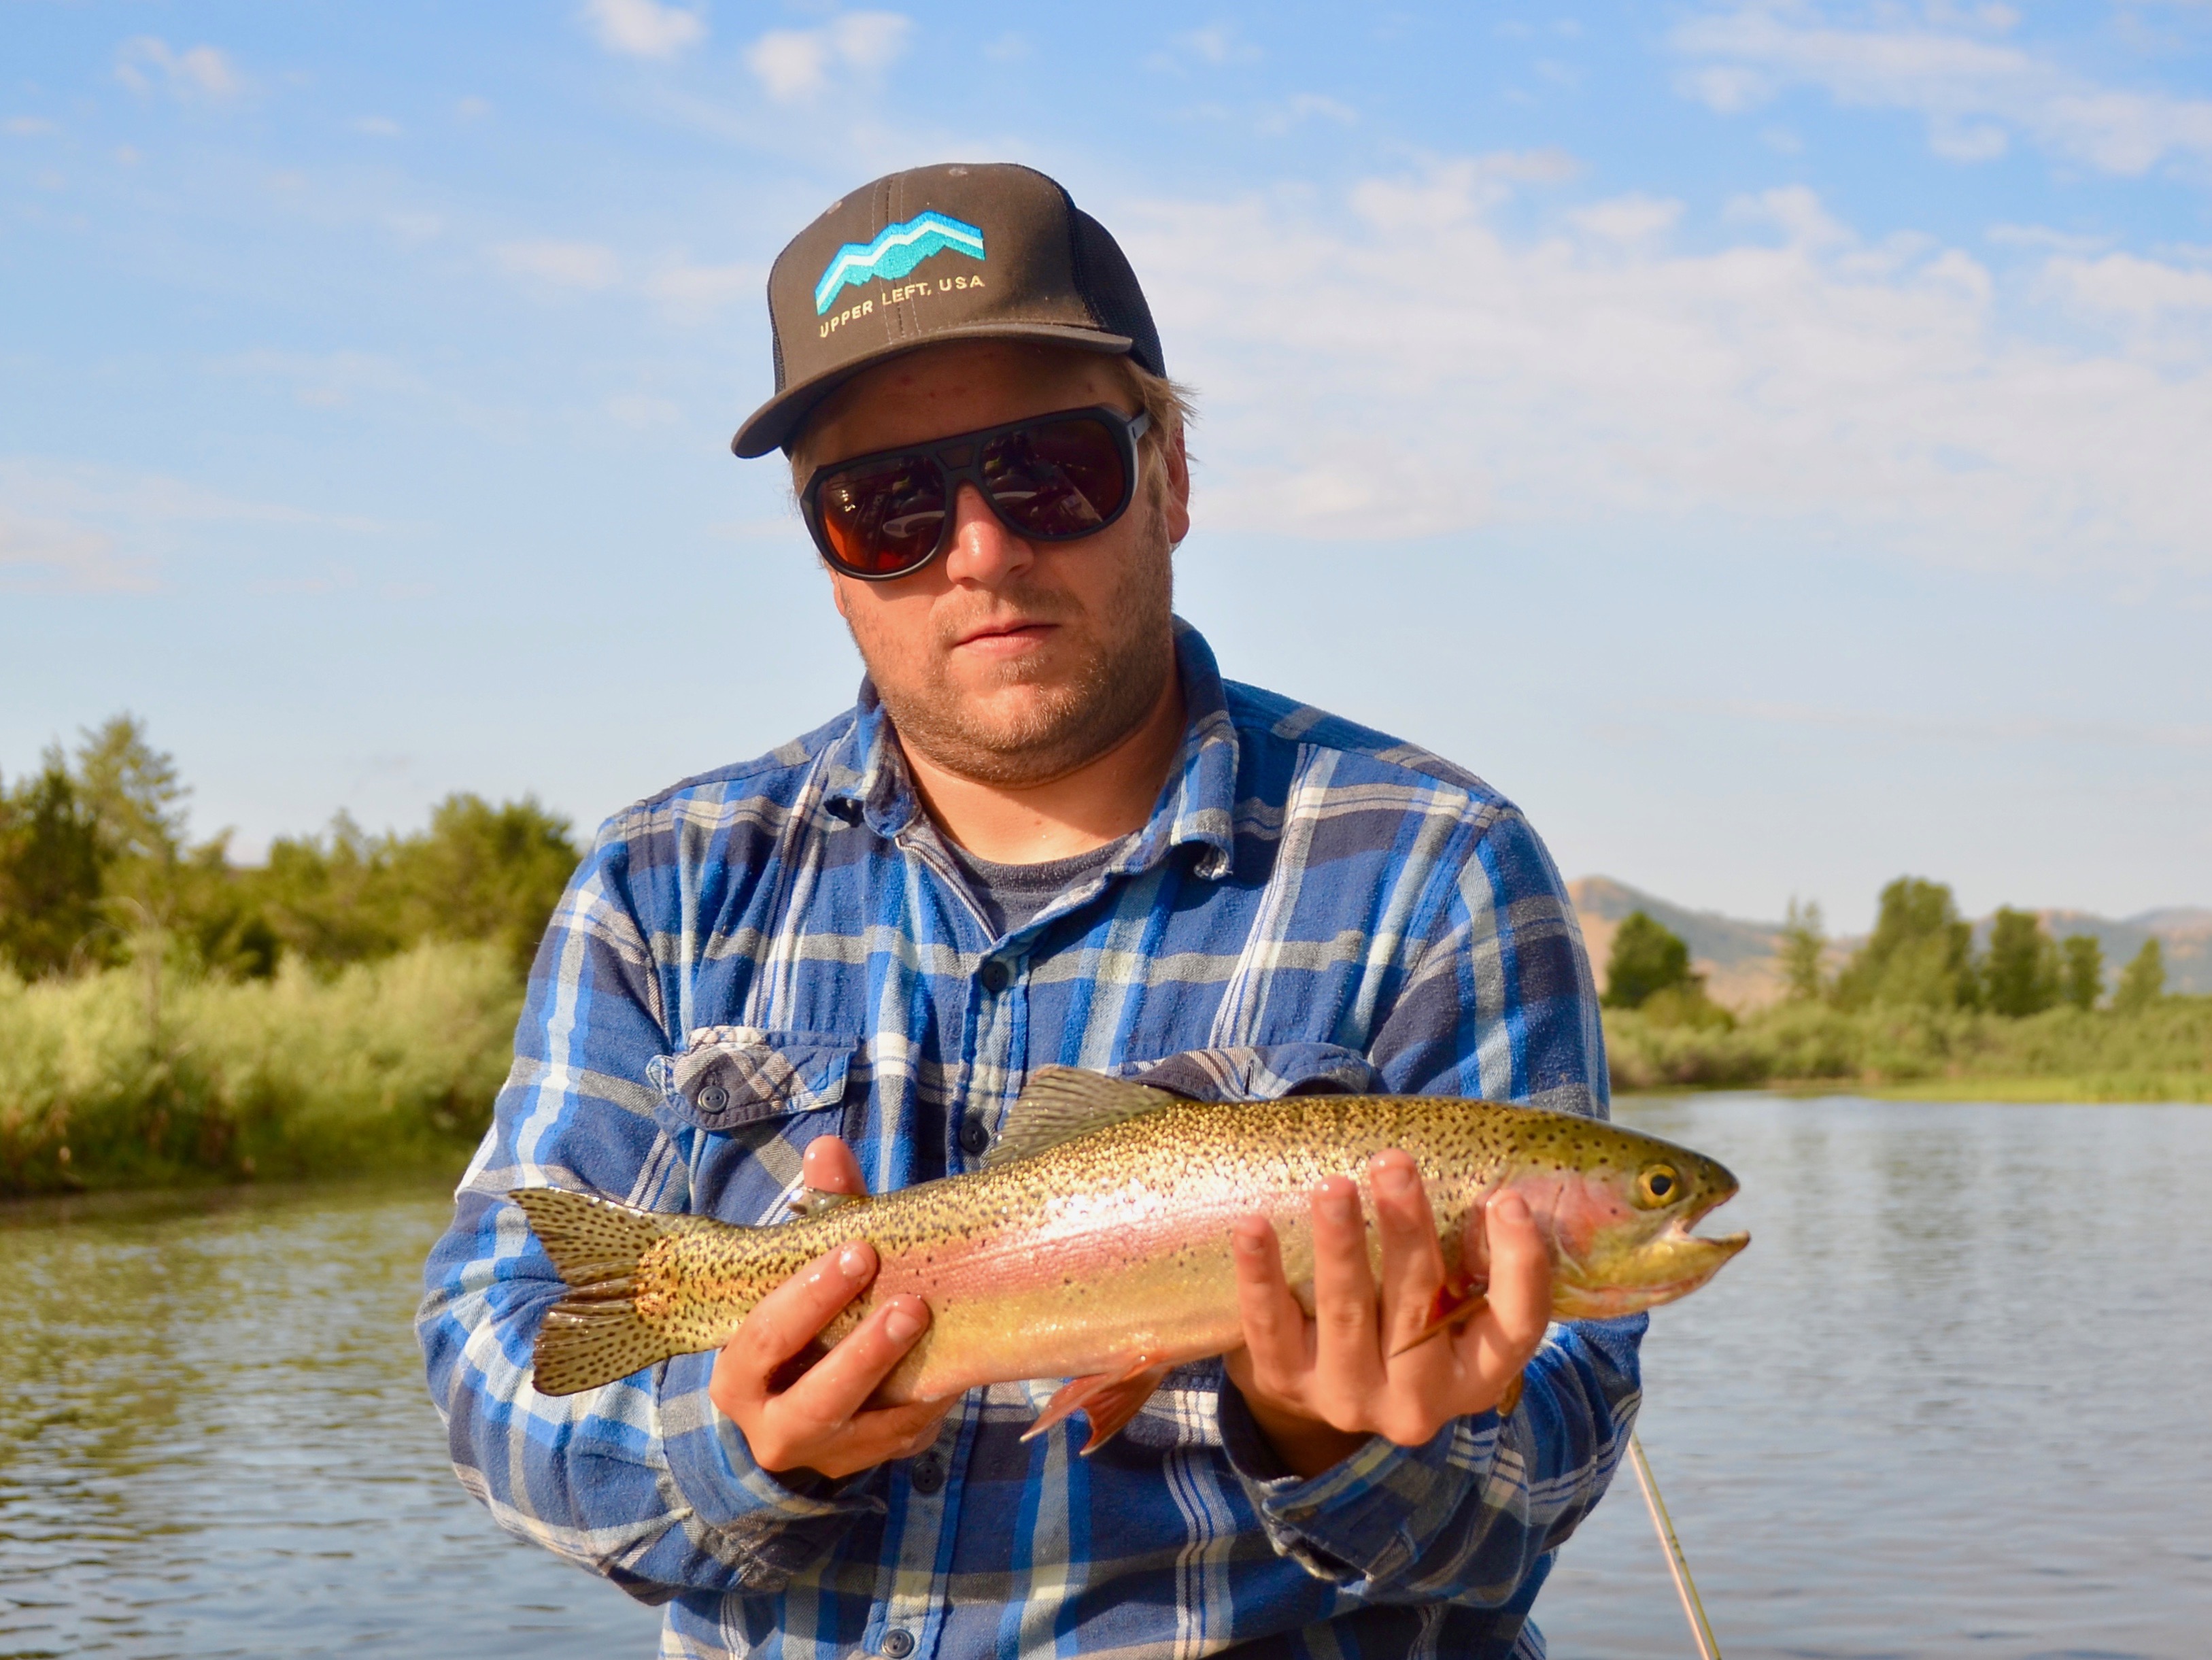 Wednesday Missouri River Fishing Report 8.8.18